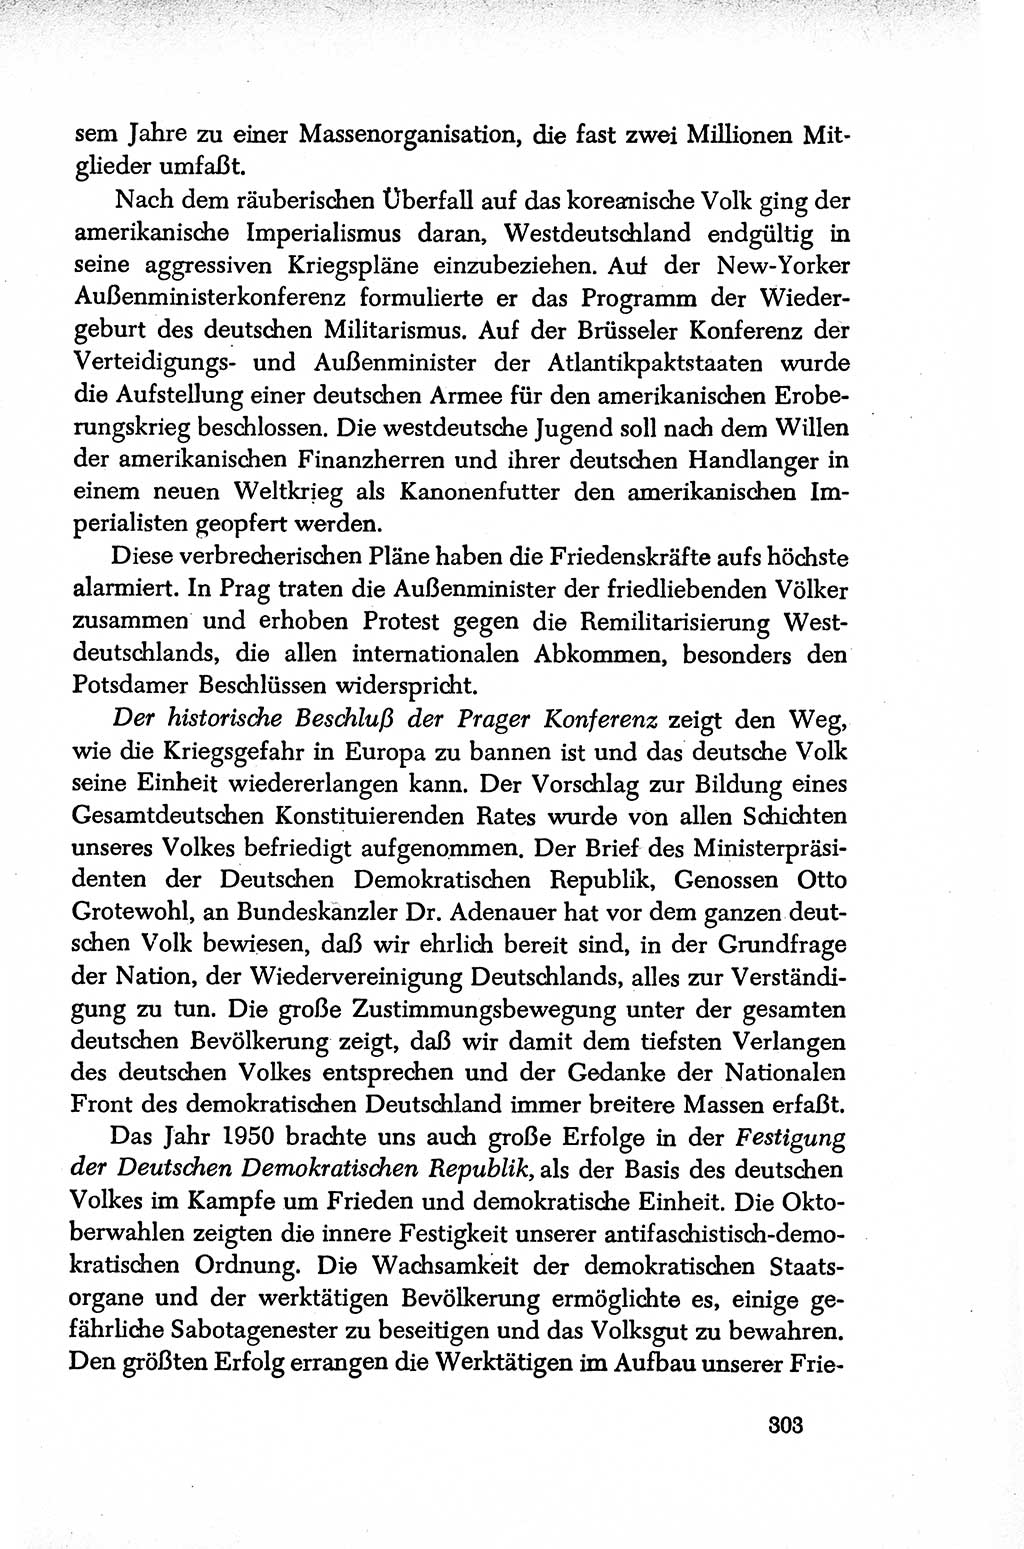 Dokumente der Sozialistischen Einheitspartei Deutschlands (SED) [Deutsche Demokratische Republik (DDR)] 1950-1952, Seite 303 (Dok. SED DDR 1950-1952, S. 303)